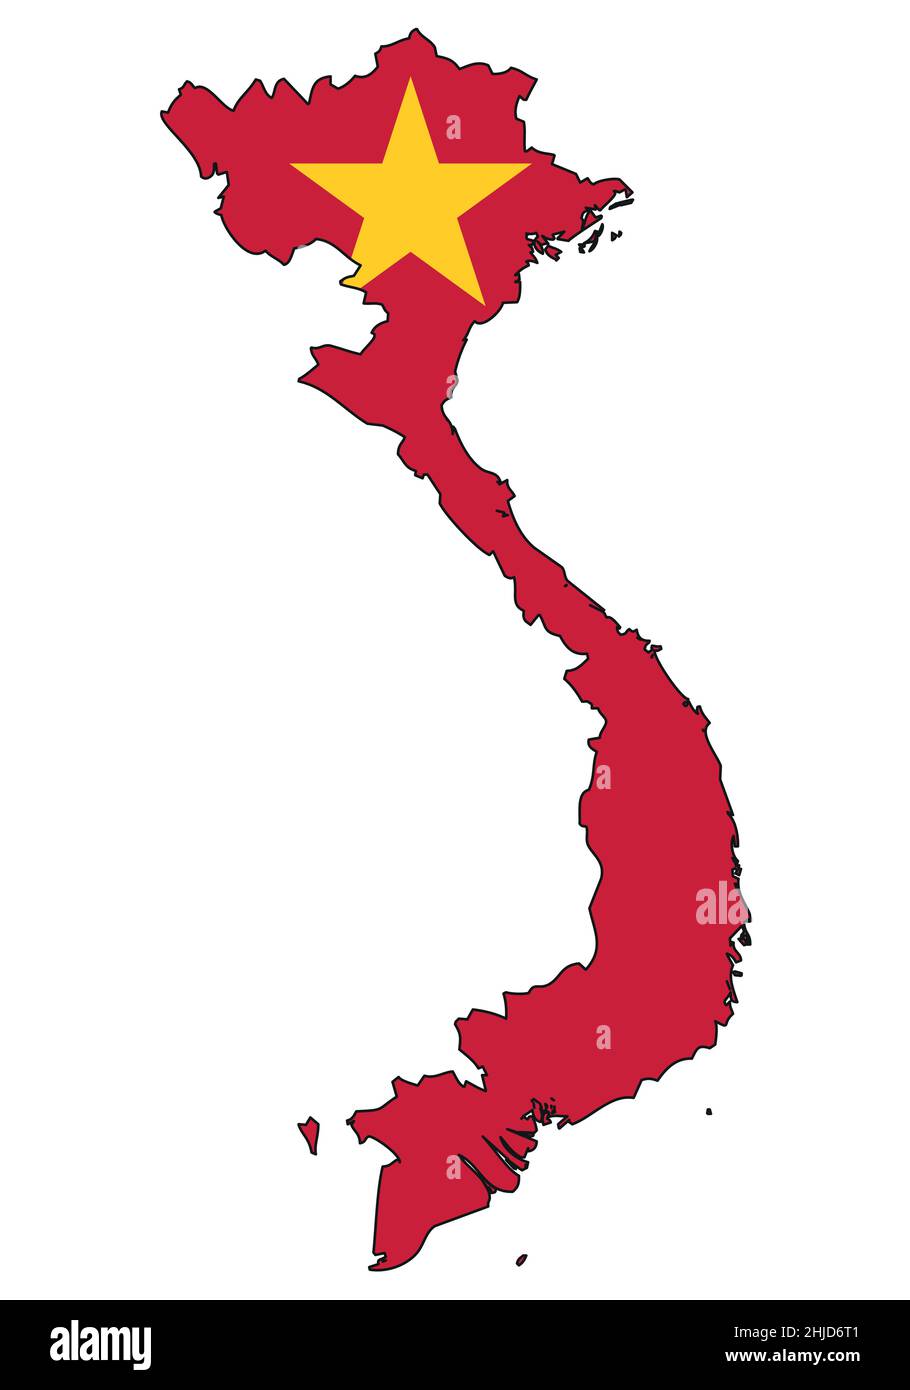 Carte du Vietnam avec drapeau - esquisse d'un état avec un drapeau national Illustration de Vecteur